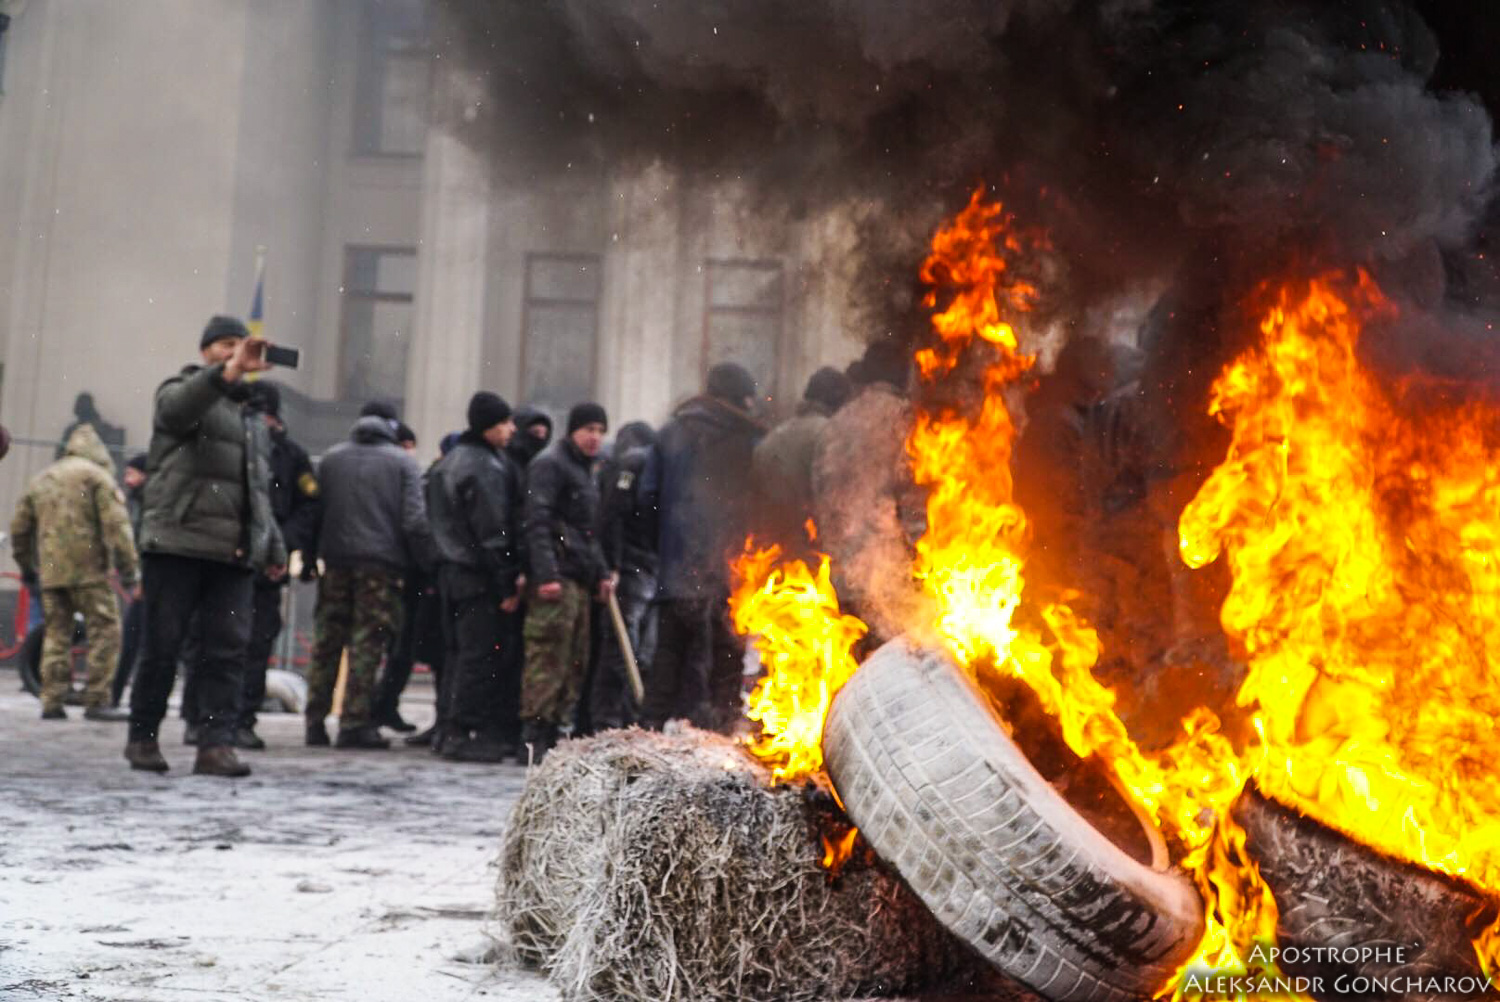 Donbas - Ukraine News in brief. Tuesday 16 January. [Ukrainian sources] Fb446553efff9a28564a0e3676e0edf9